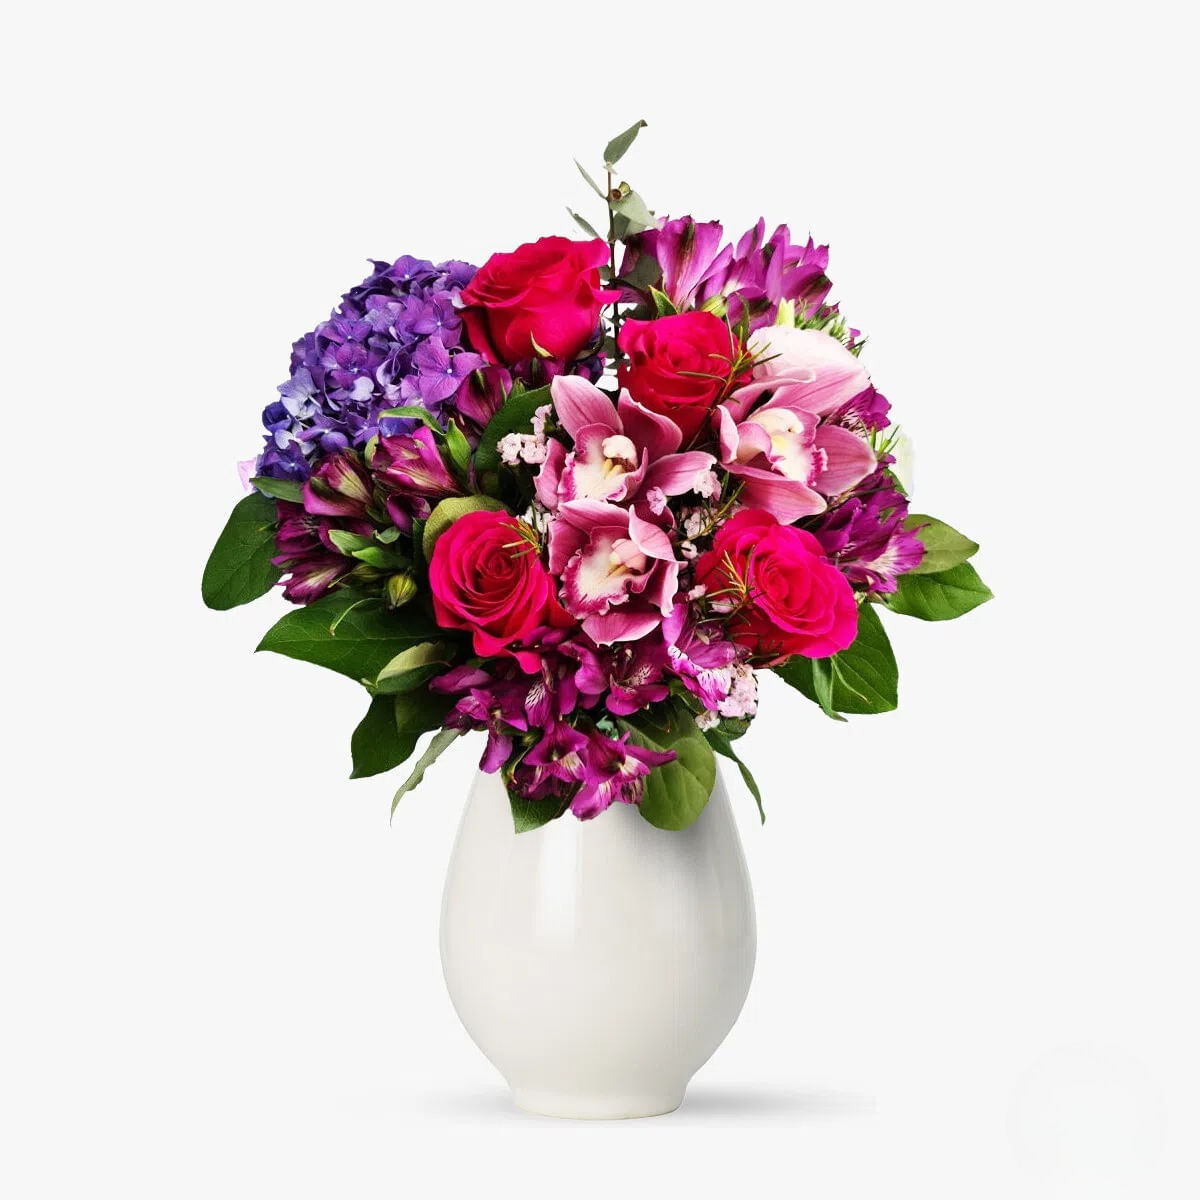 Buchet cu hortensie mov si orhidee – premium